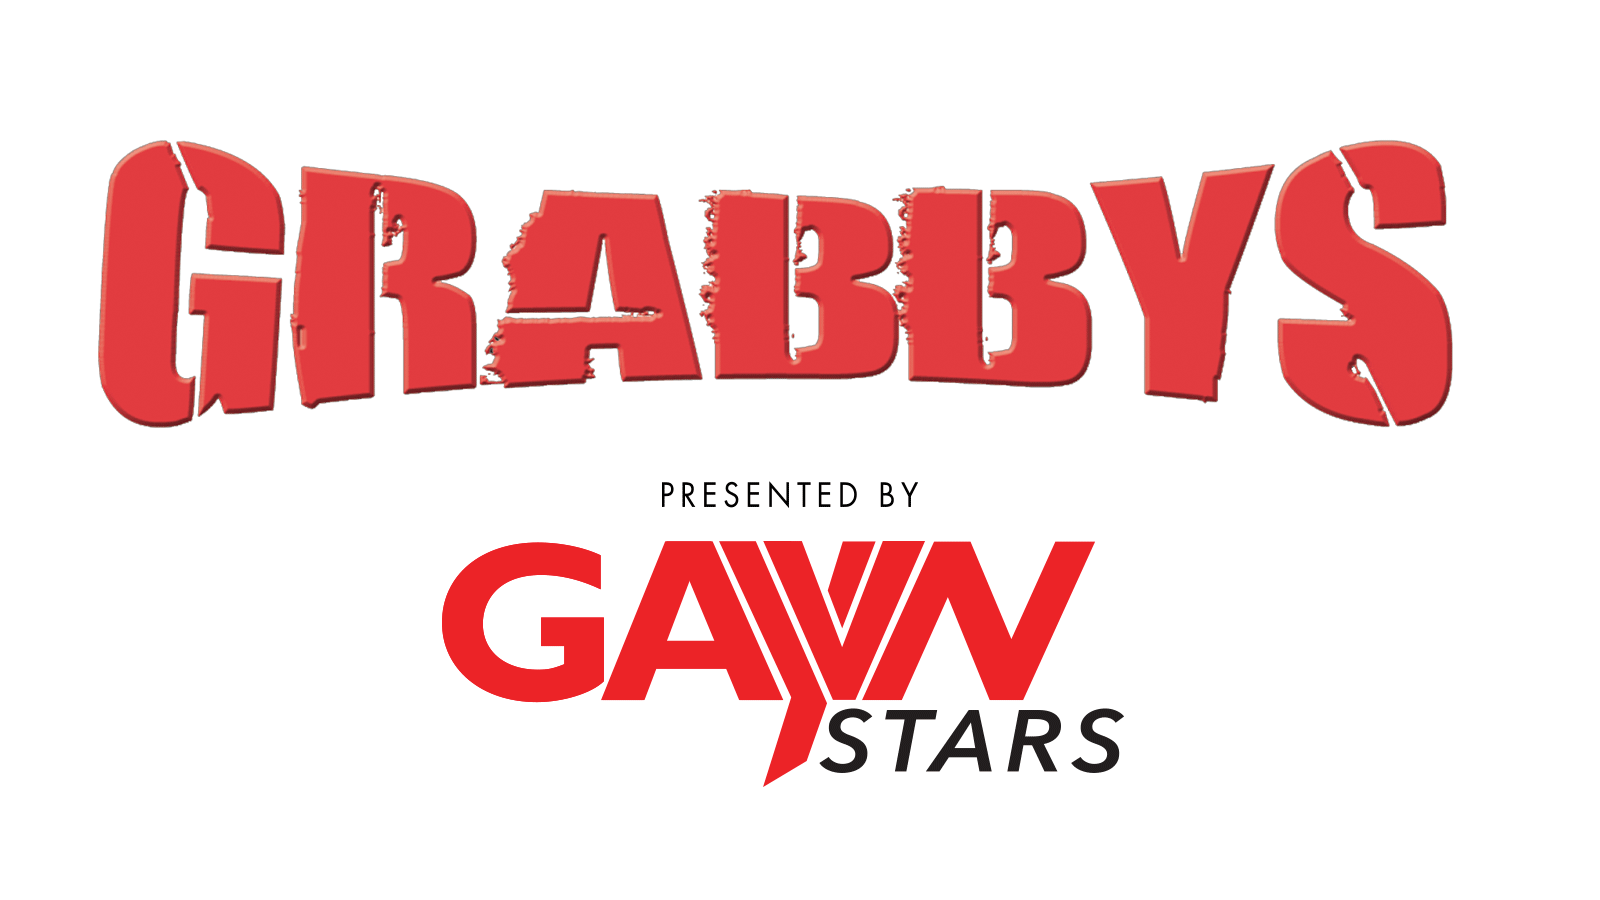 2020 Grabbys Award Show To Be Live Streamed on GayVN Stars